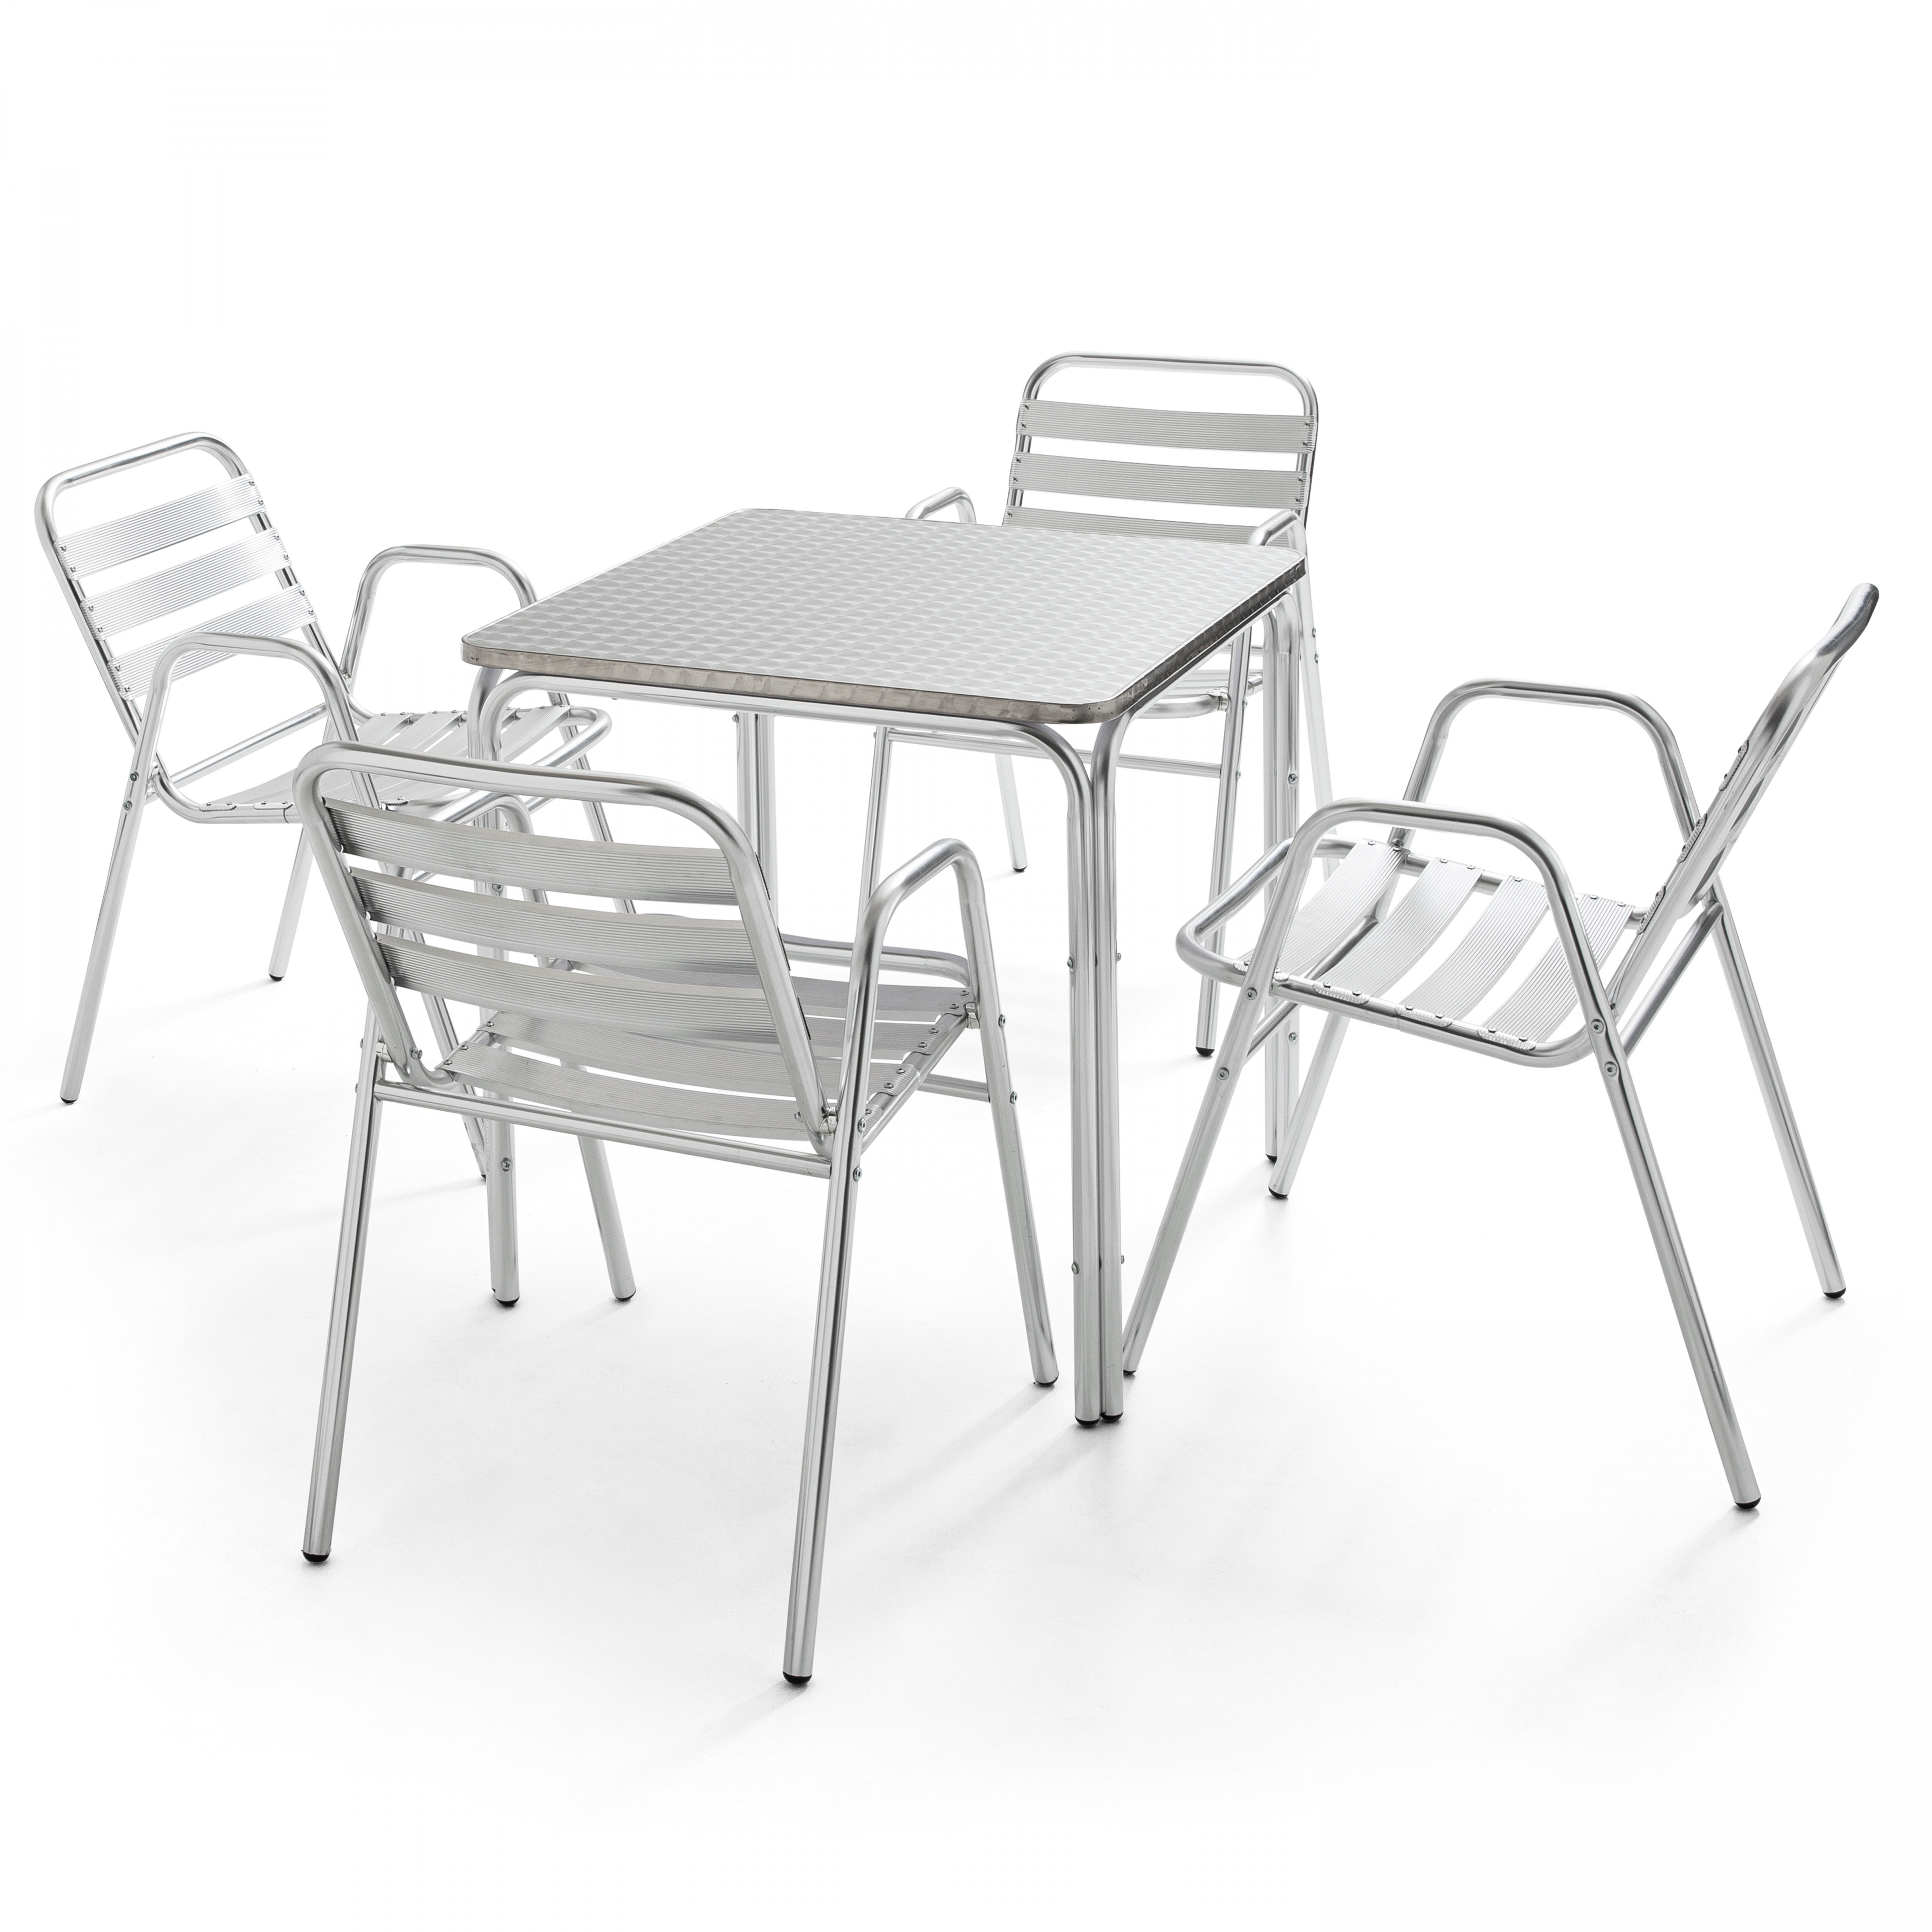 Table de jardin carrée en aluminium et 4 fauteuils